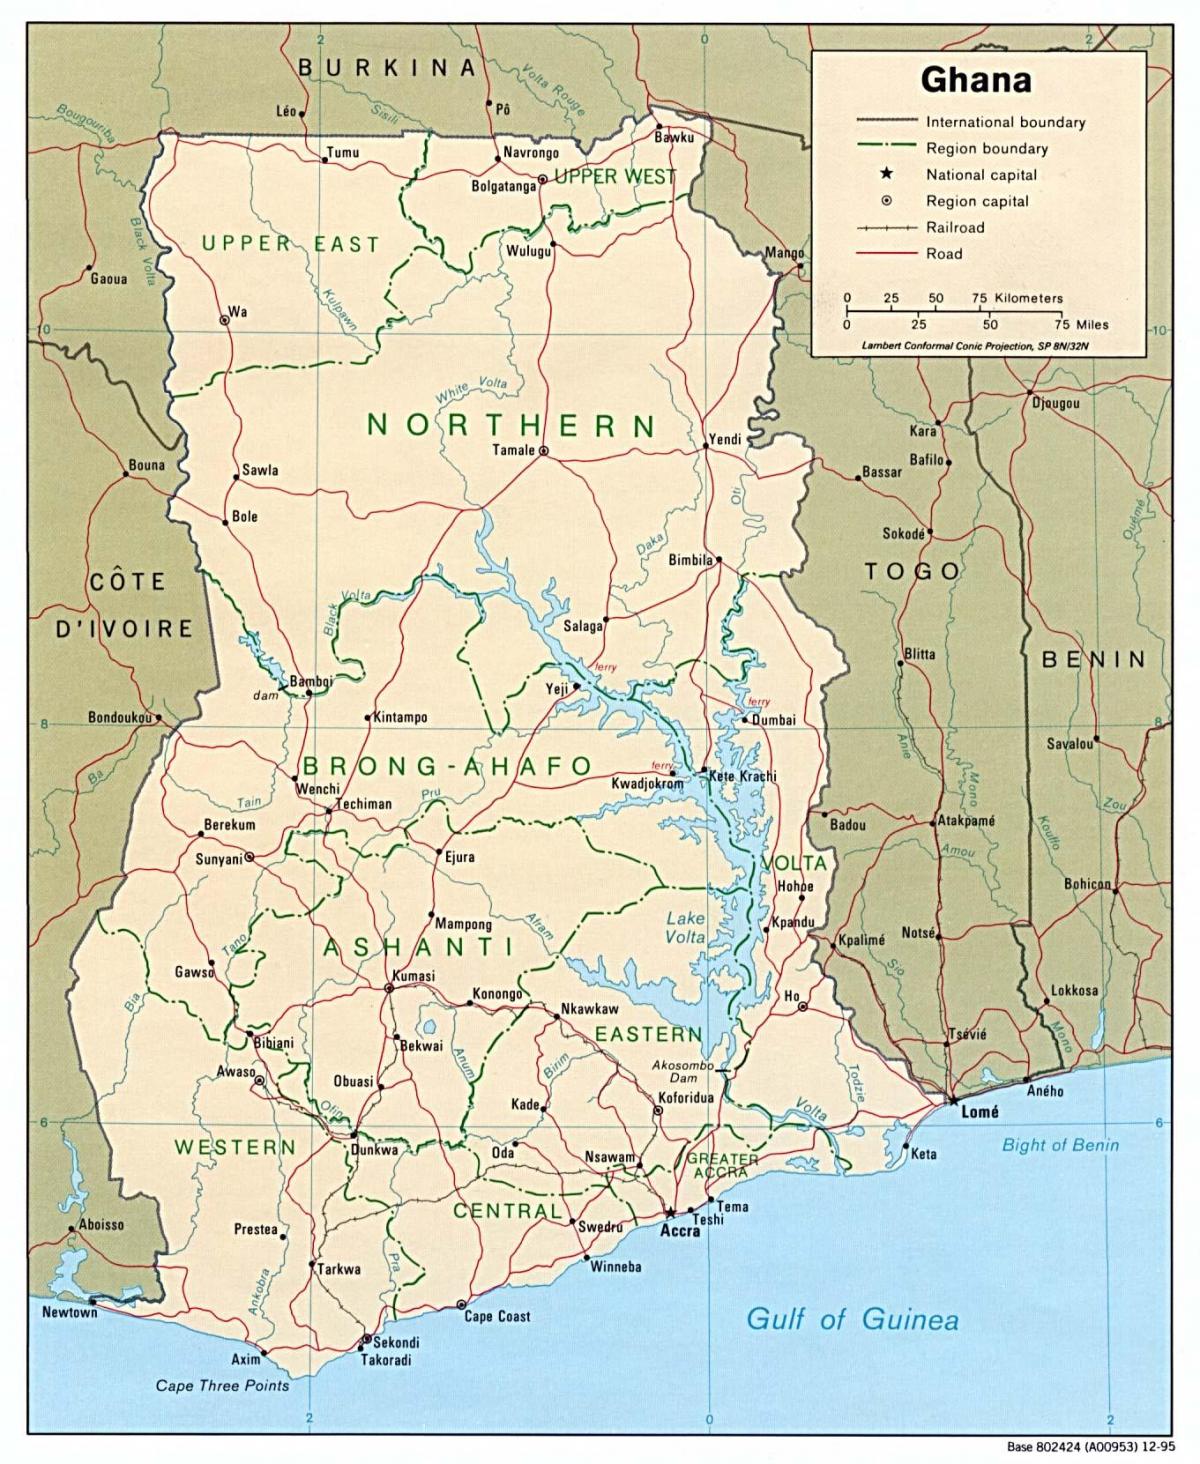 घाना के नक्शे के साथ शहरों और कस्बों